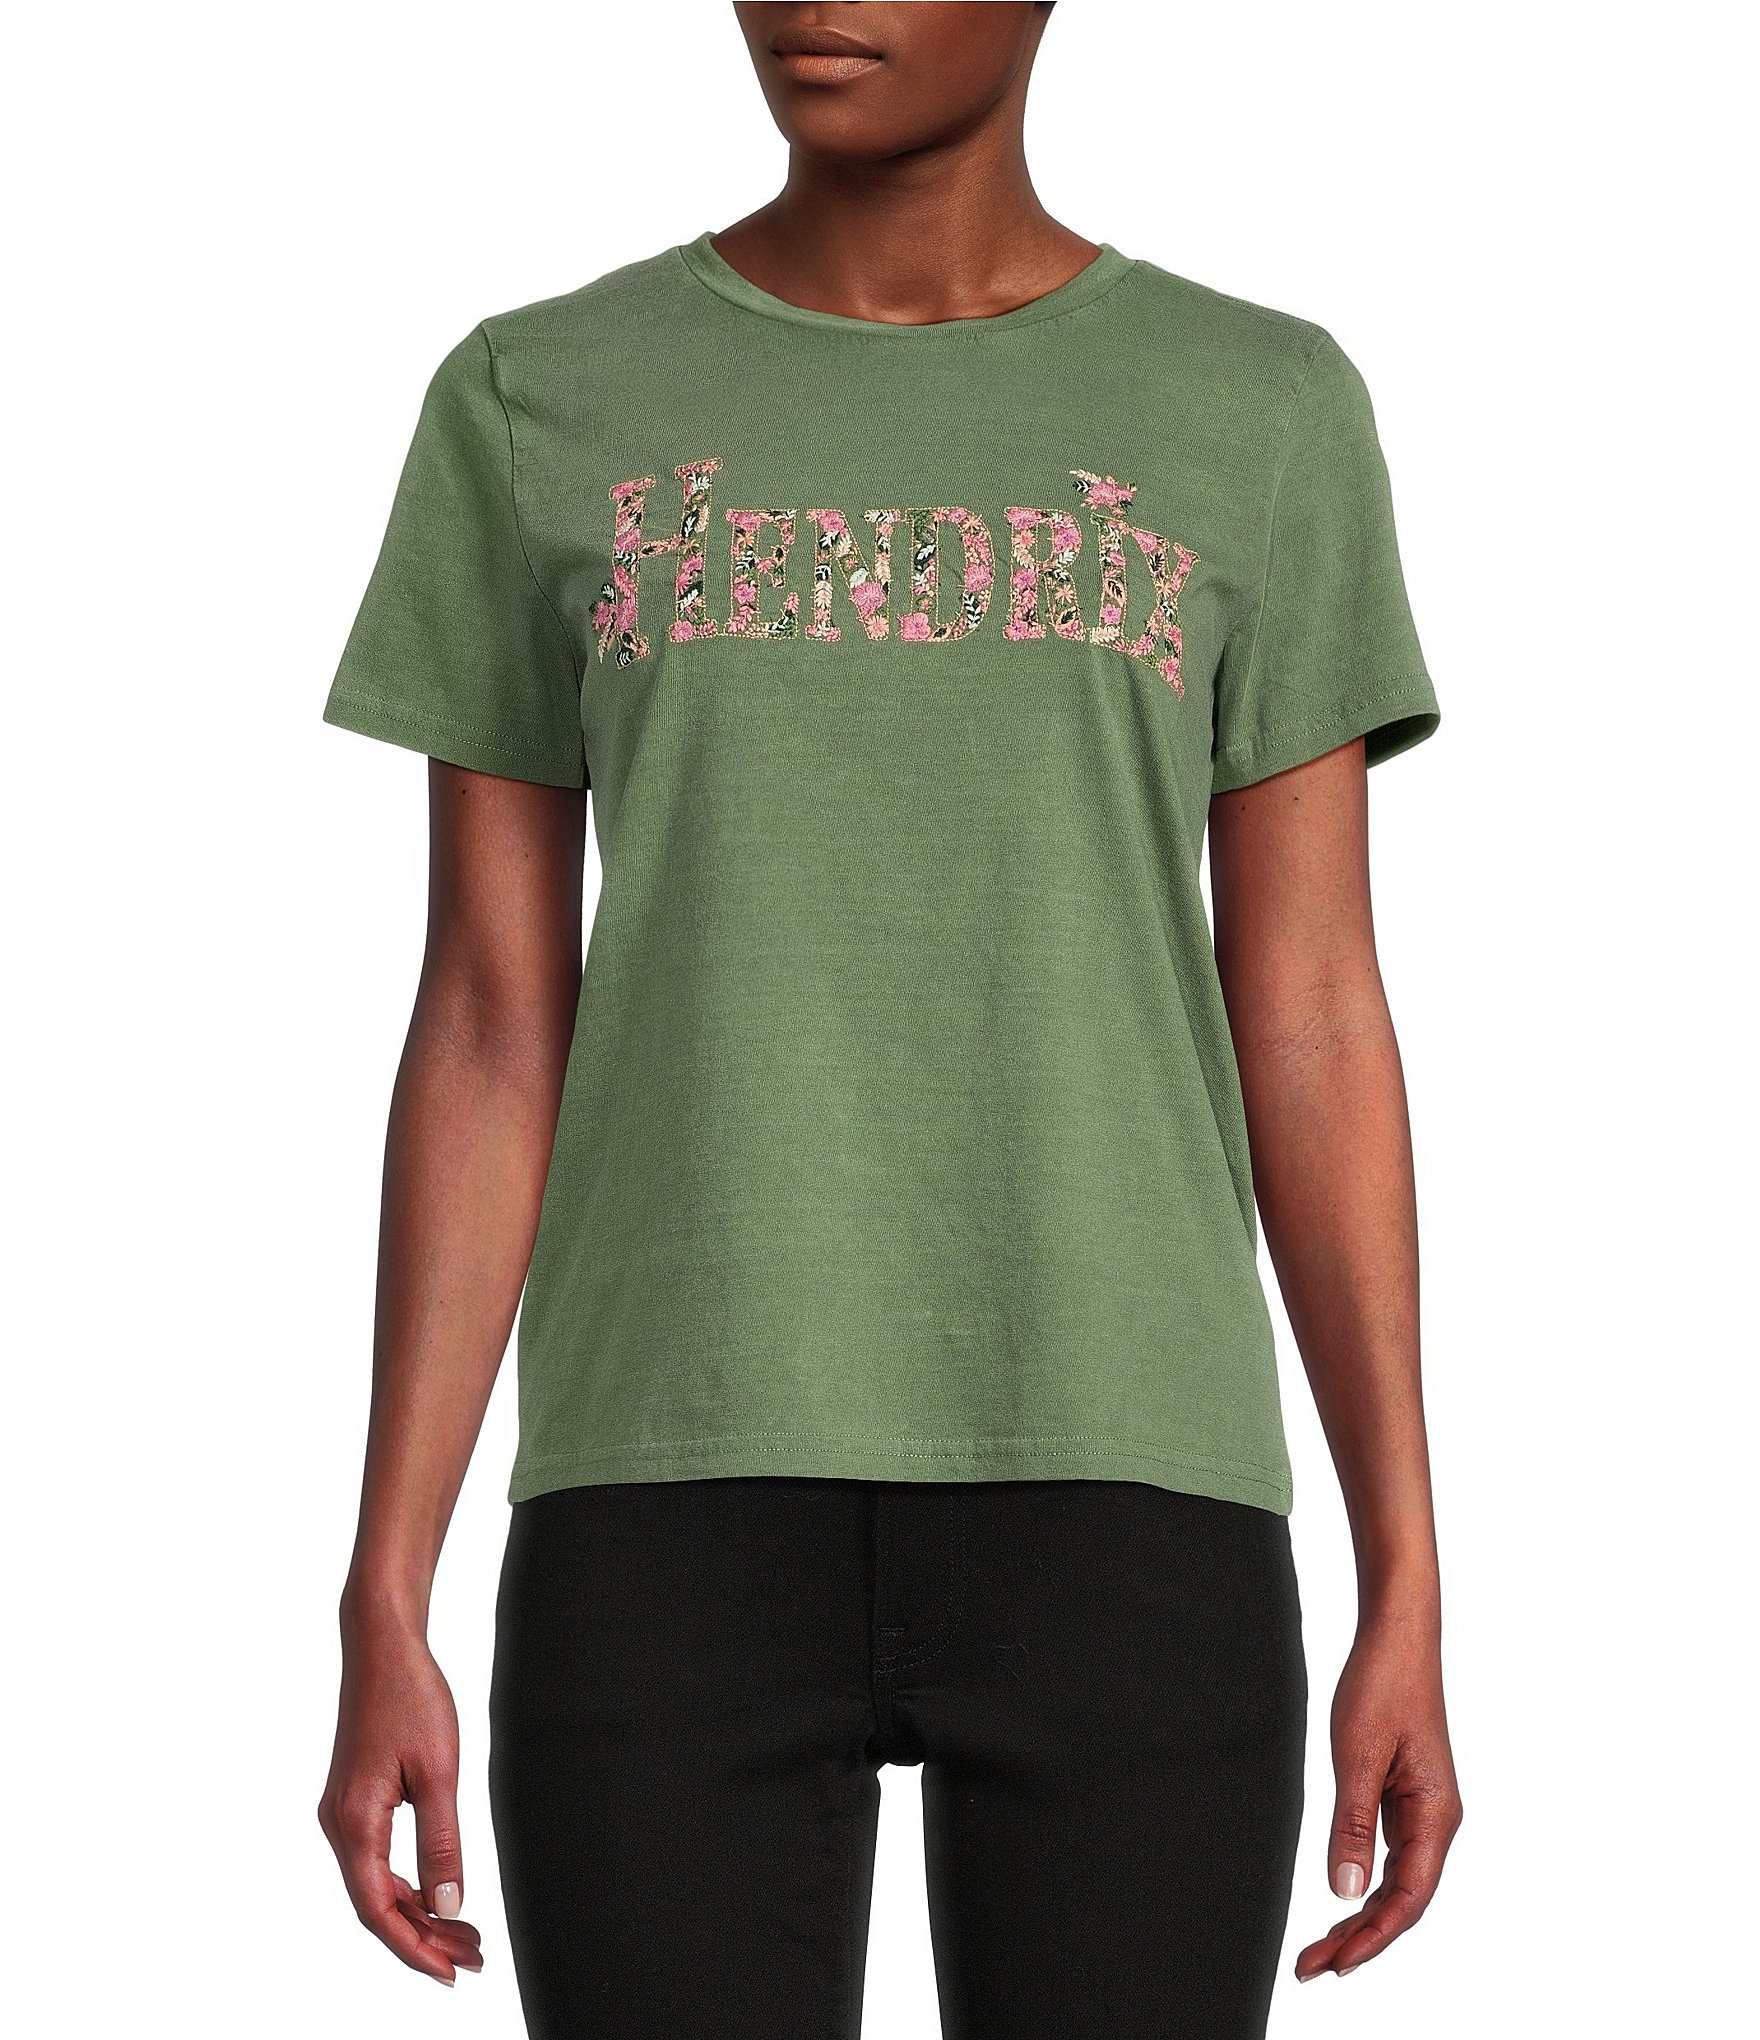 Lucky Brand Light Green Camo & Star Print Americana T-Shirt Dress Medium -  $29 - From Leslie